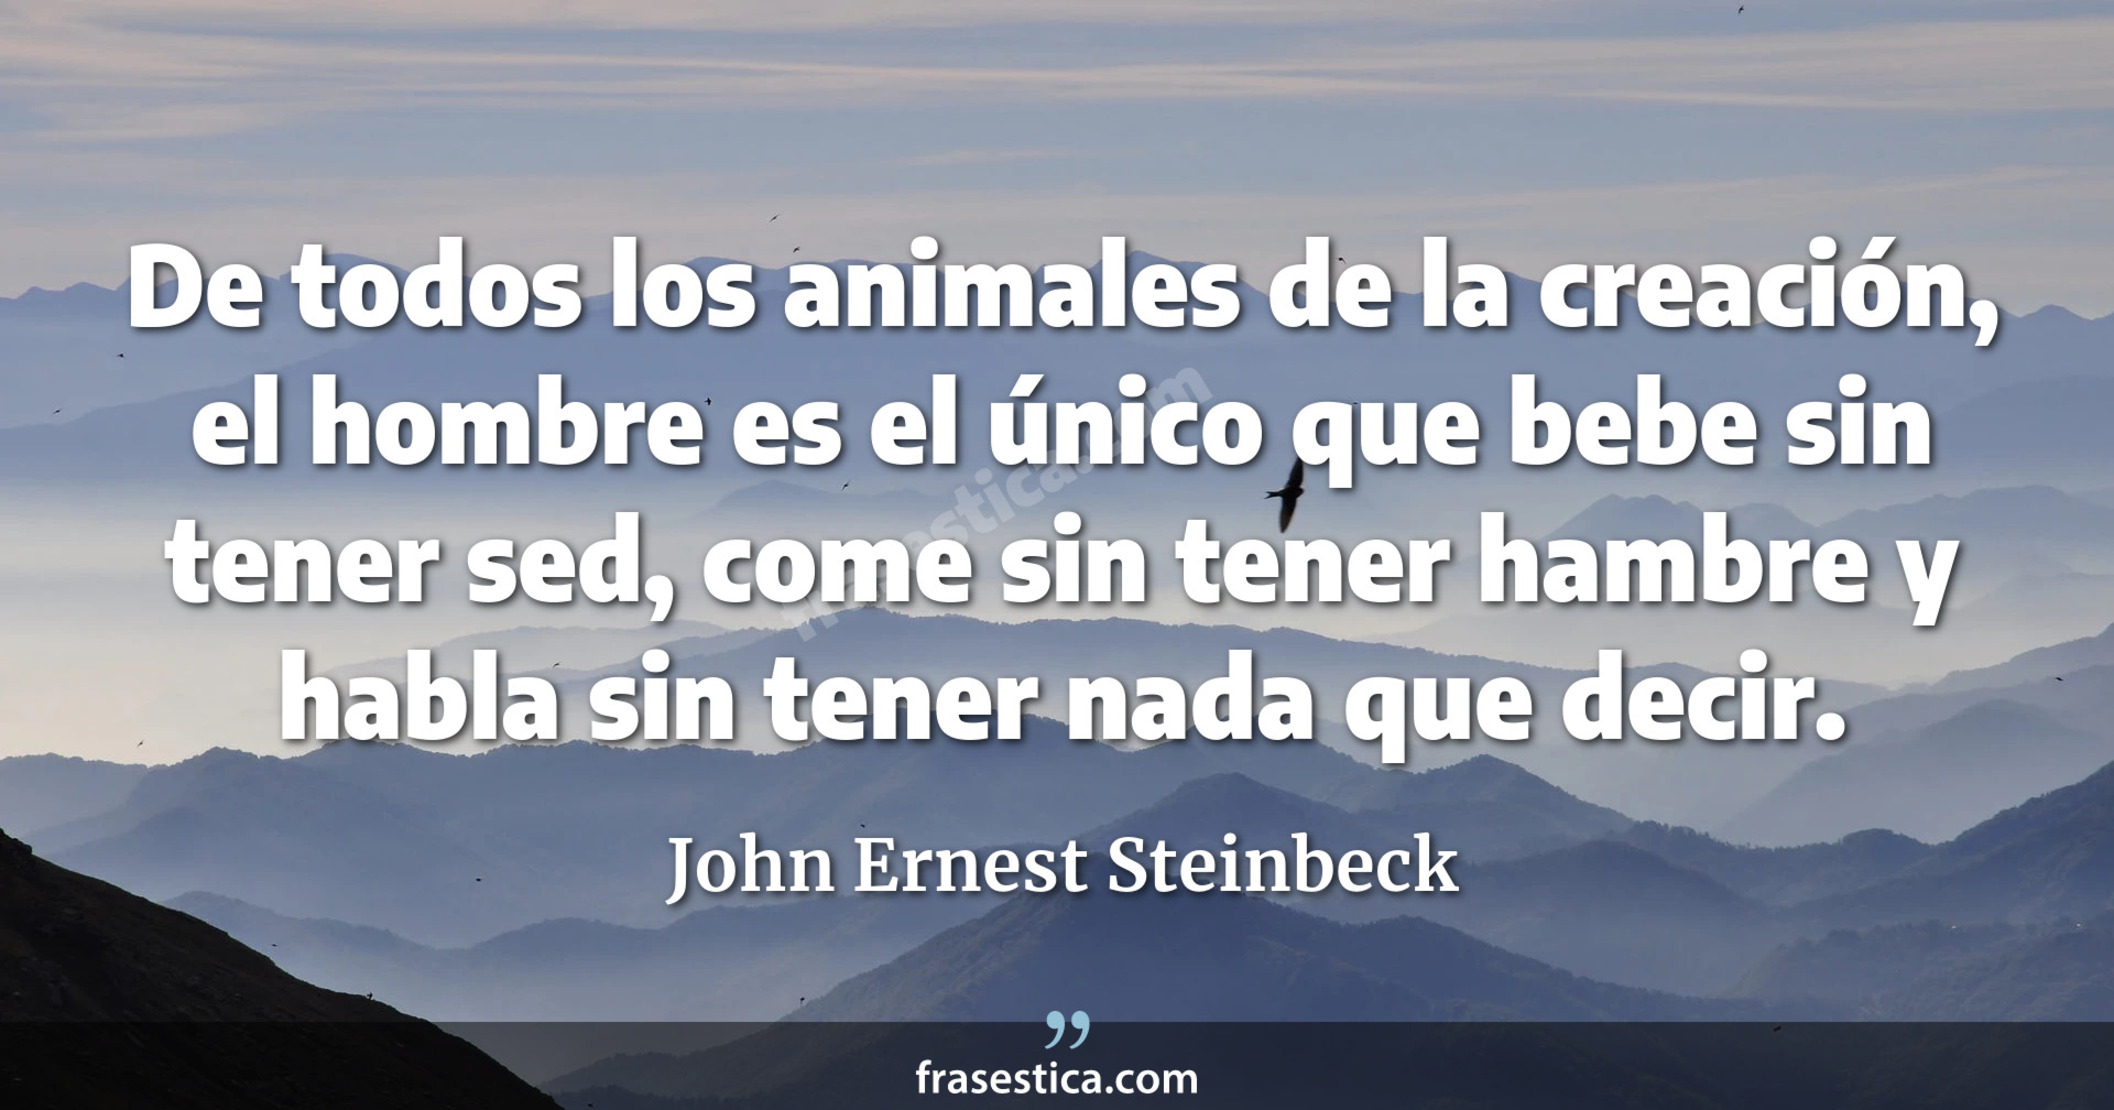 De todos los animales de la creación, el hombre es el único que bebe sin tener sed, come sin tener hambre y habla sin tener nada que decir. - John Ernest Steinbeck